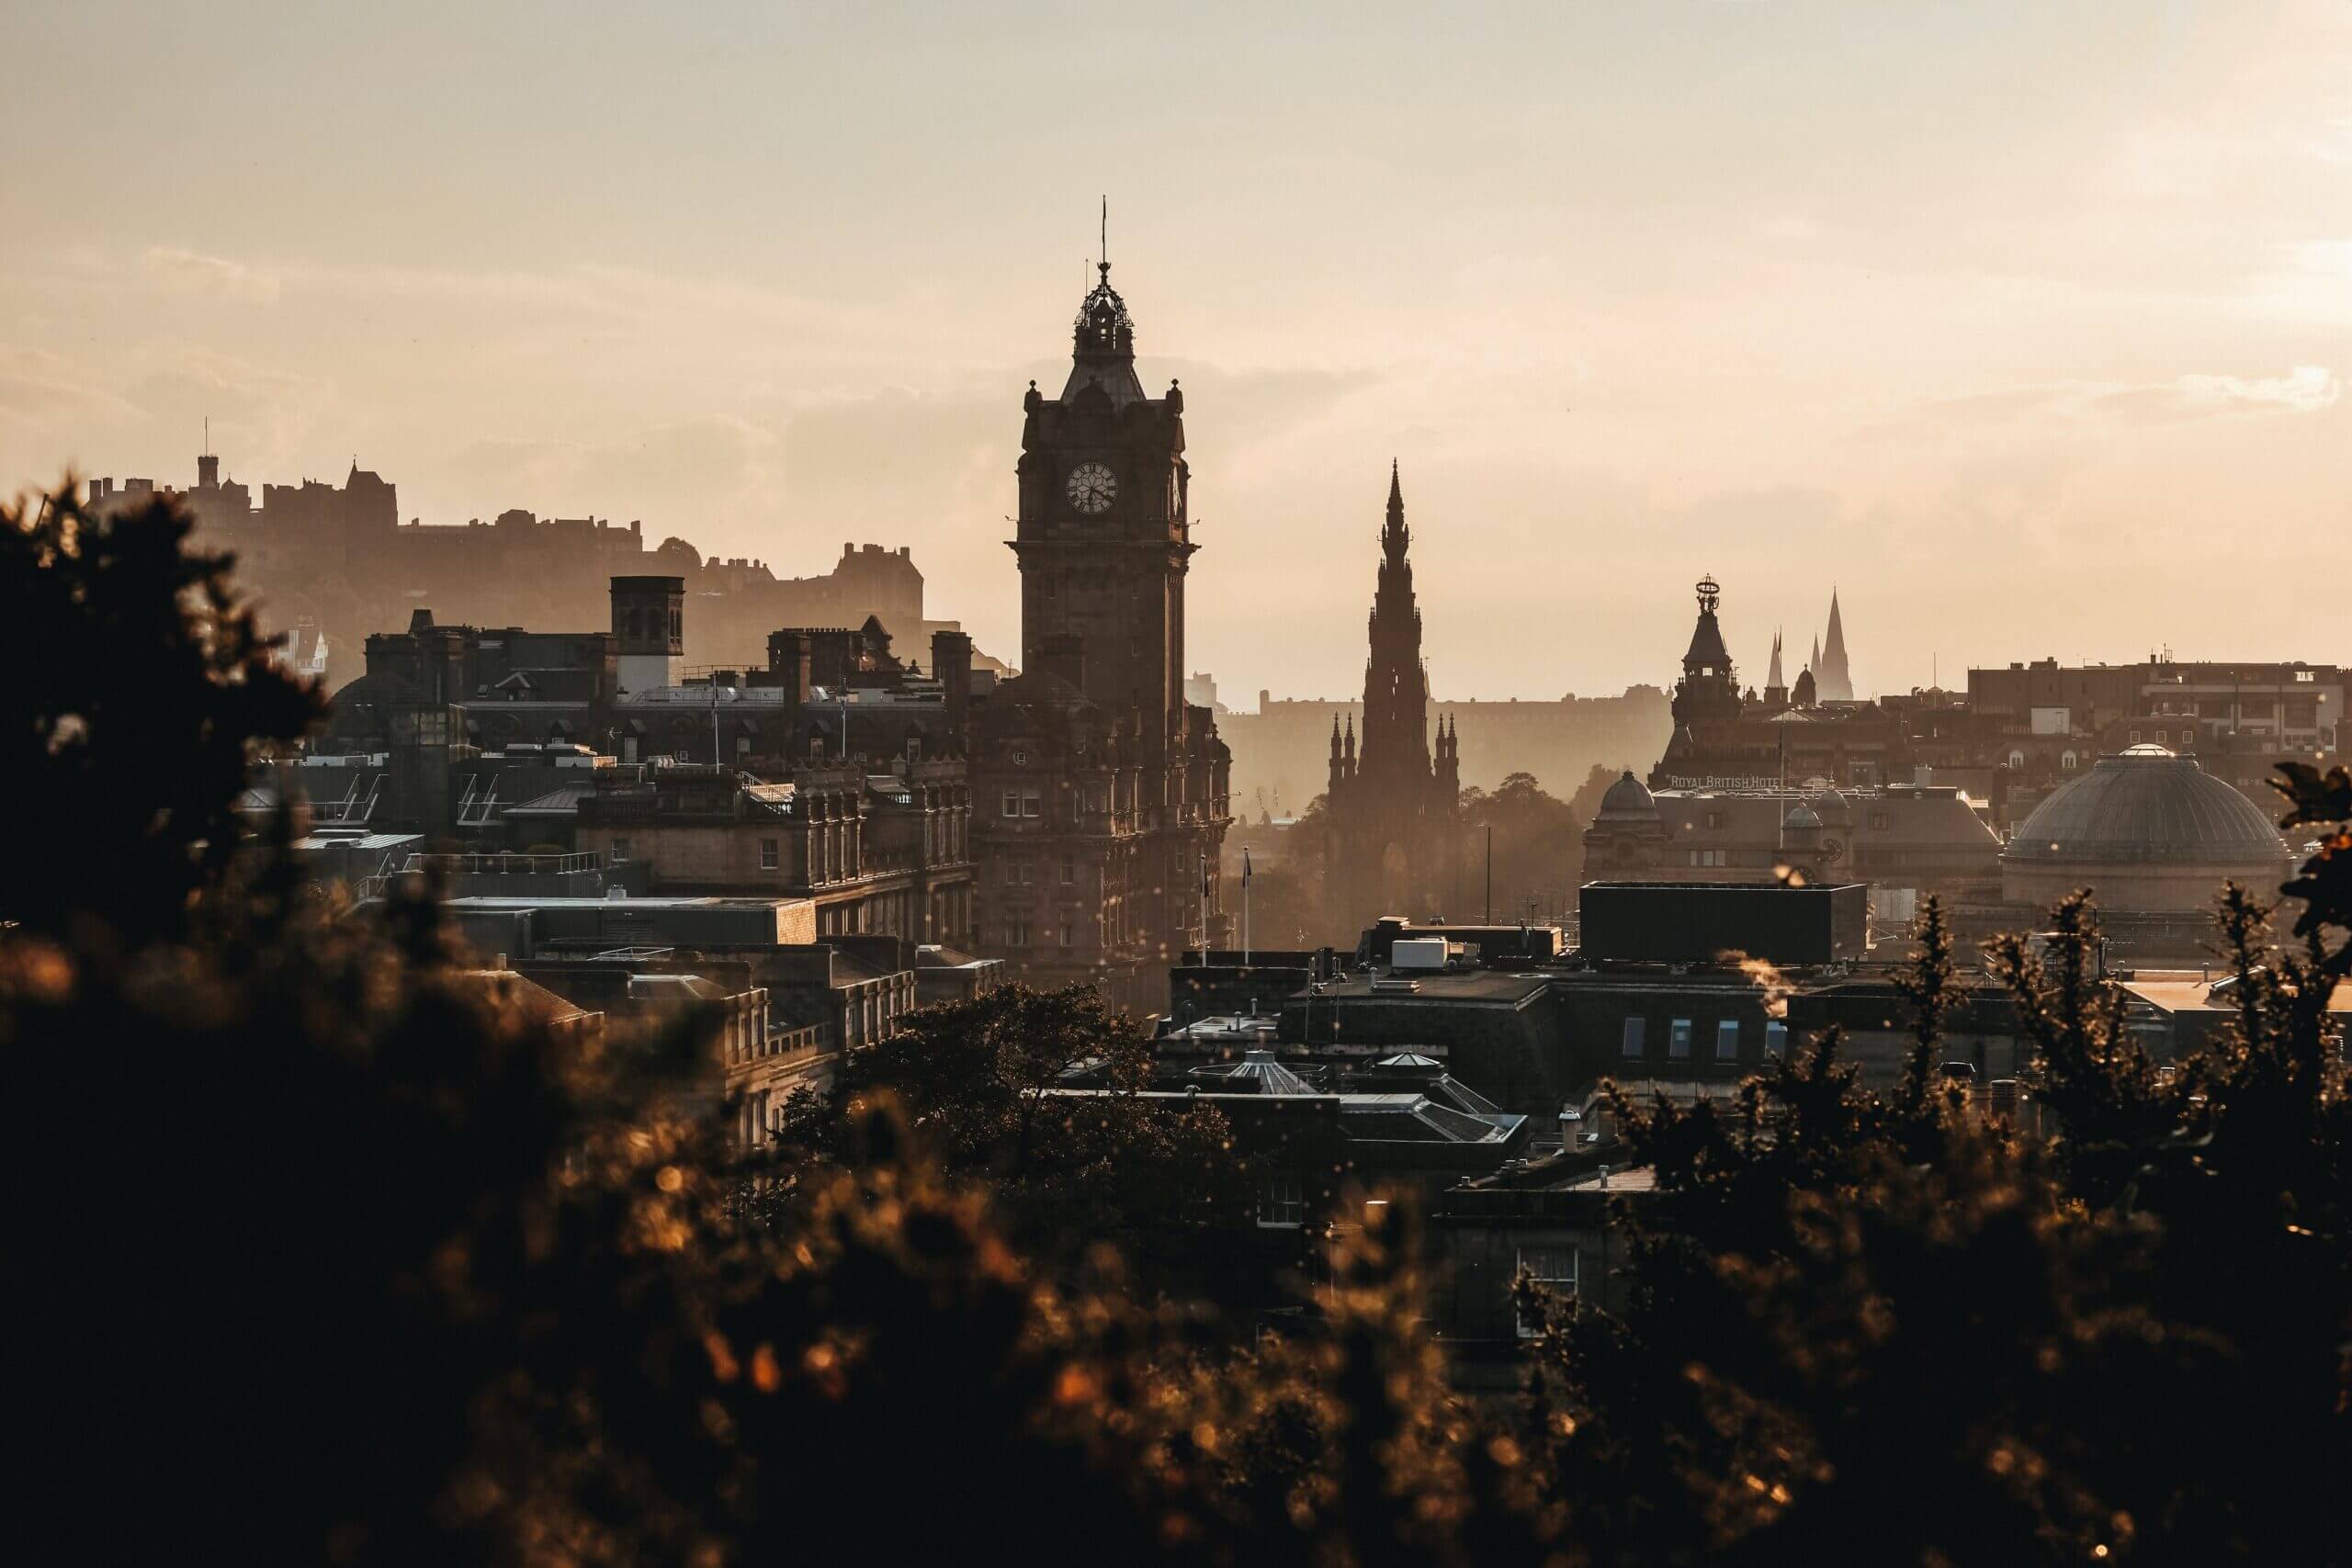 غلاسكو من أفضل المدن من حيث استضافة اللاجئين في اسكتلندا 